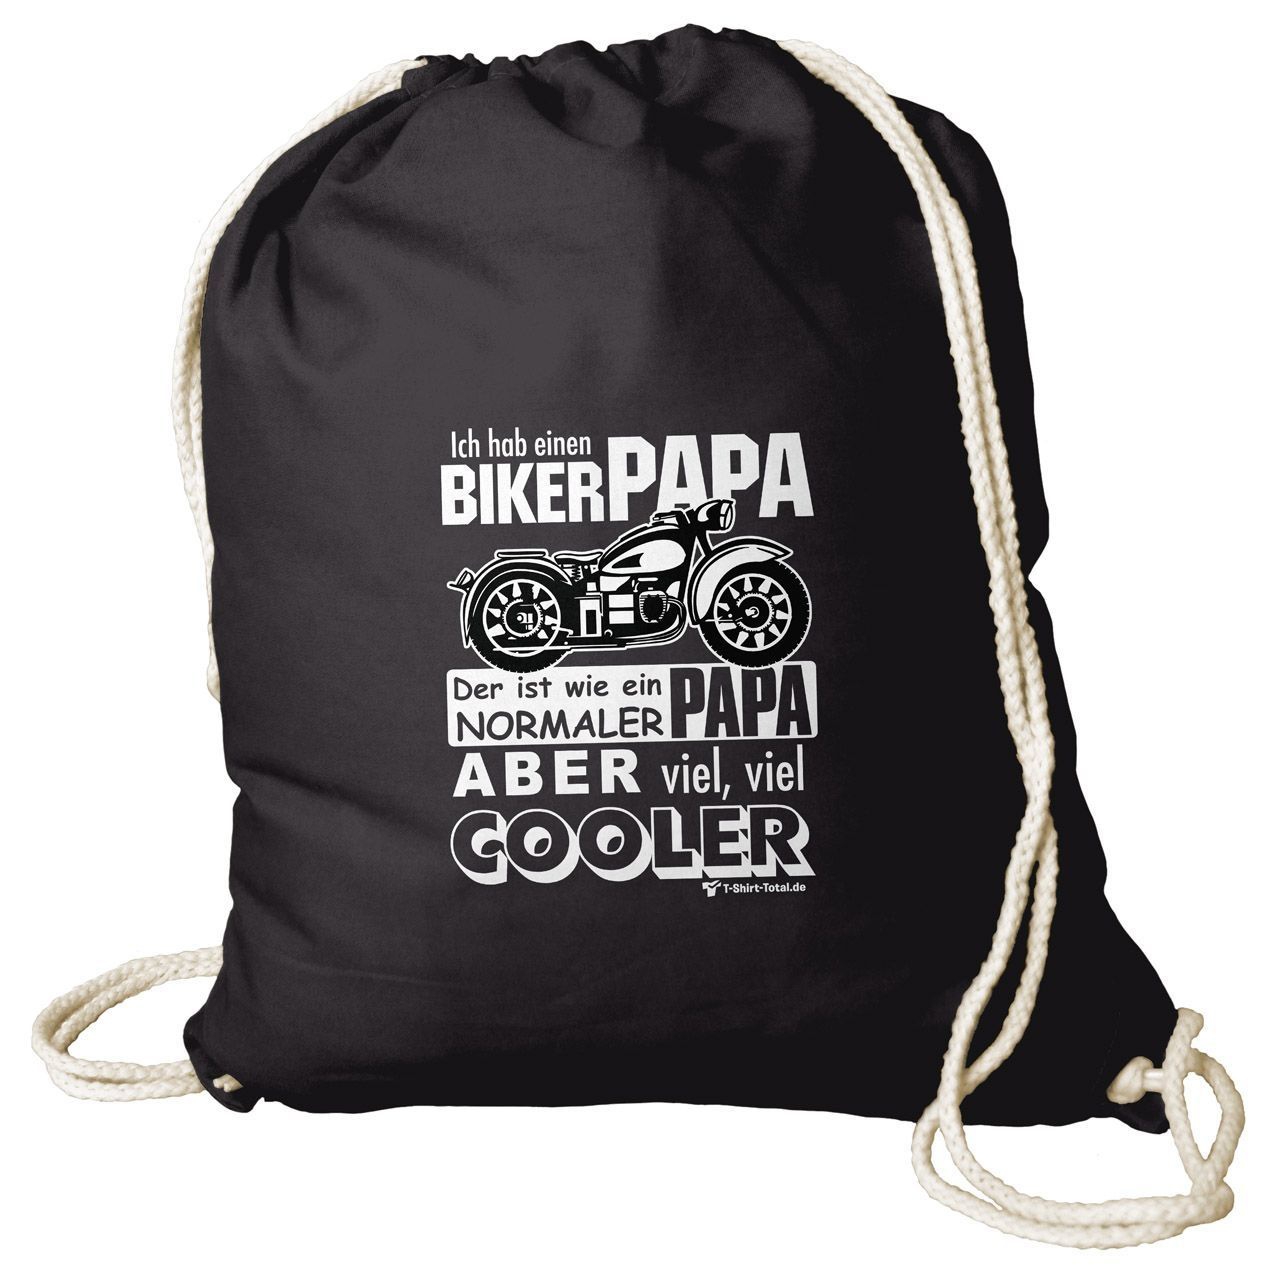 Biker Papa Rucksack Beutel schwarz